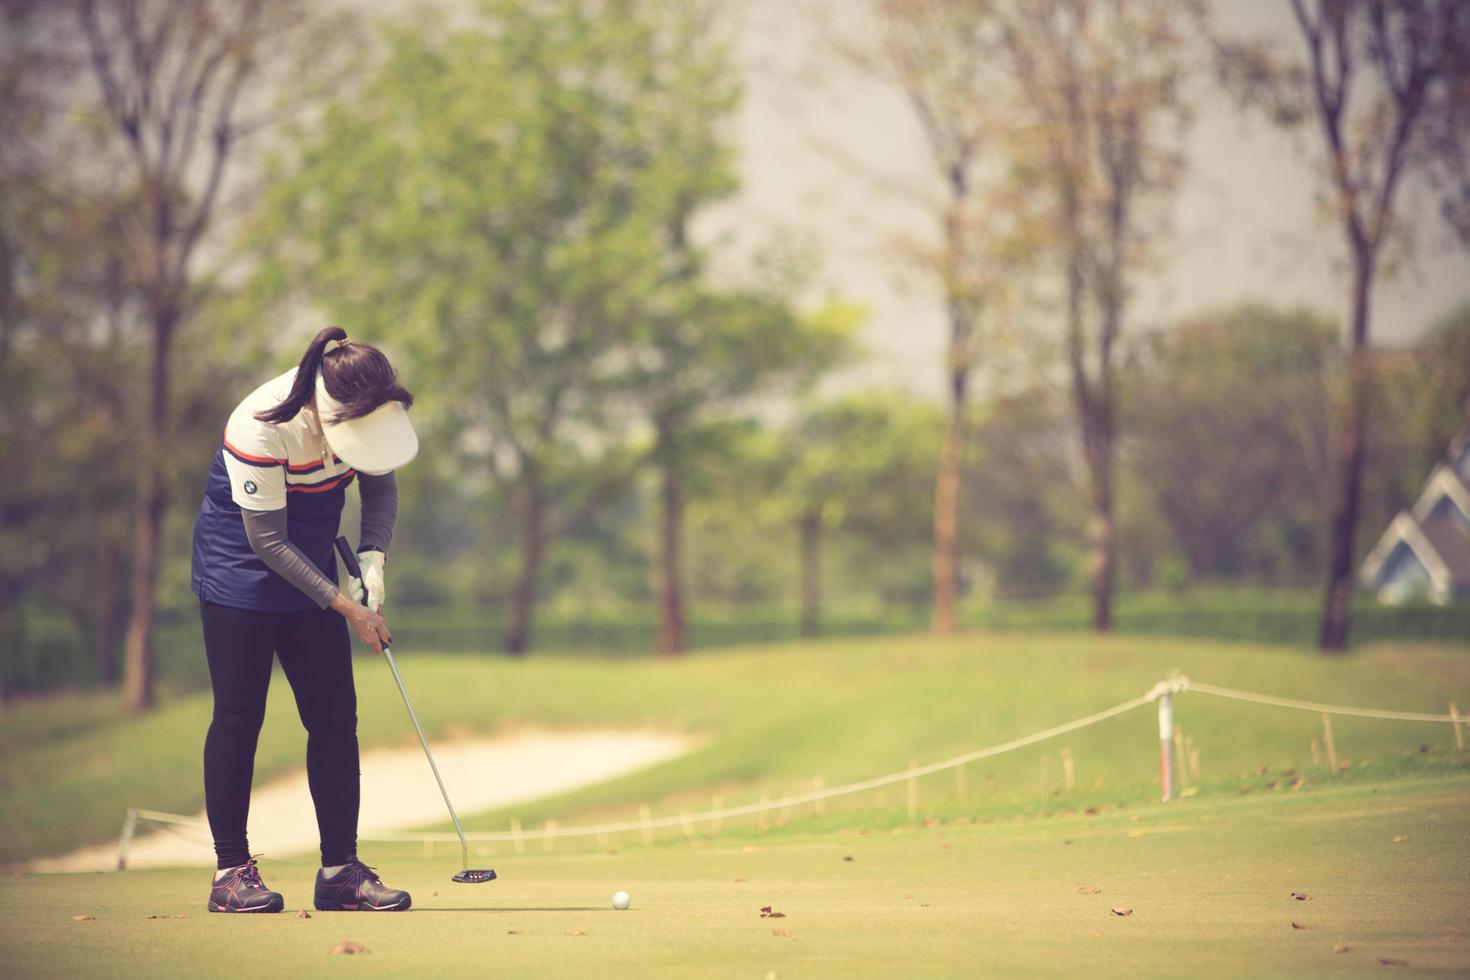 jugador de golf en el putting green golpeando la bola en un agujero.color vintage foto